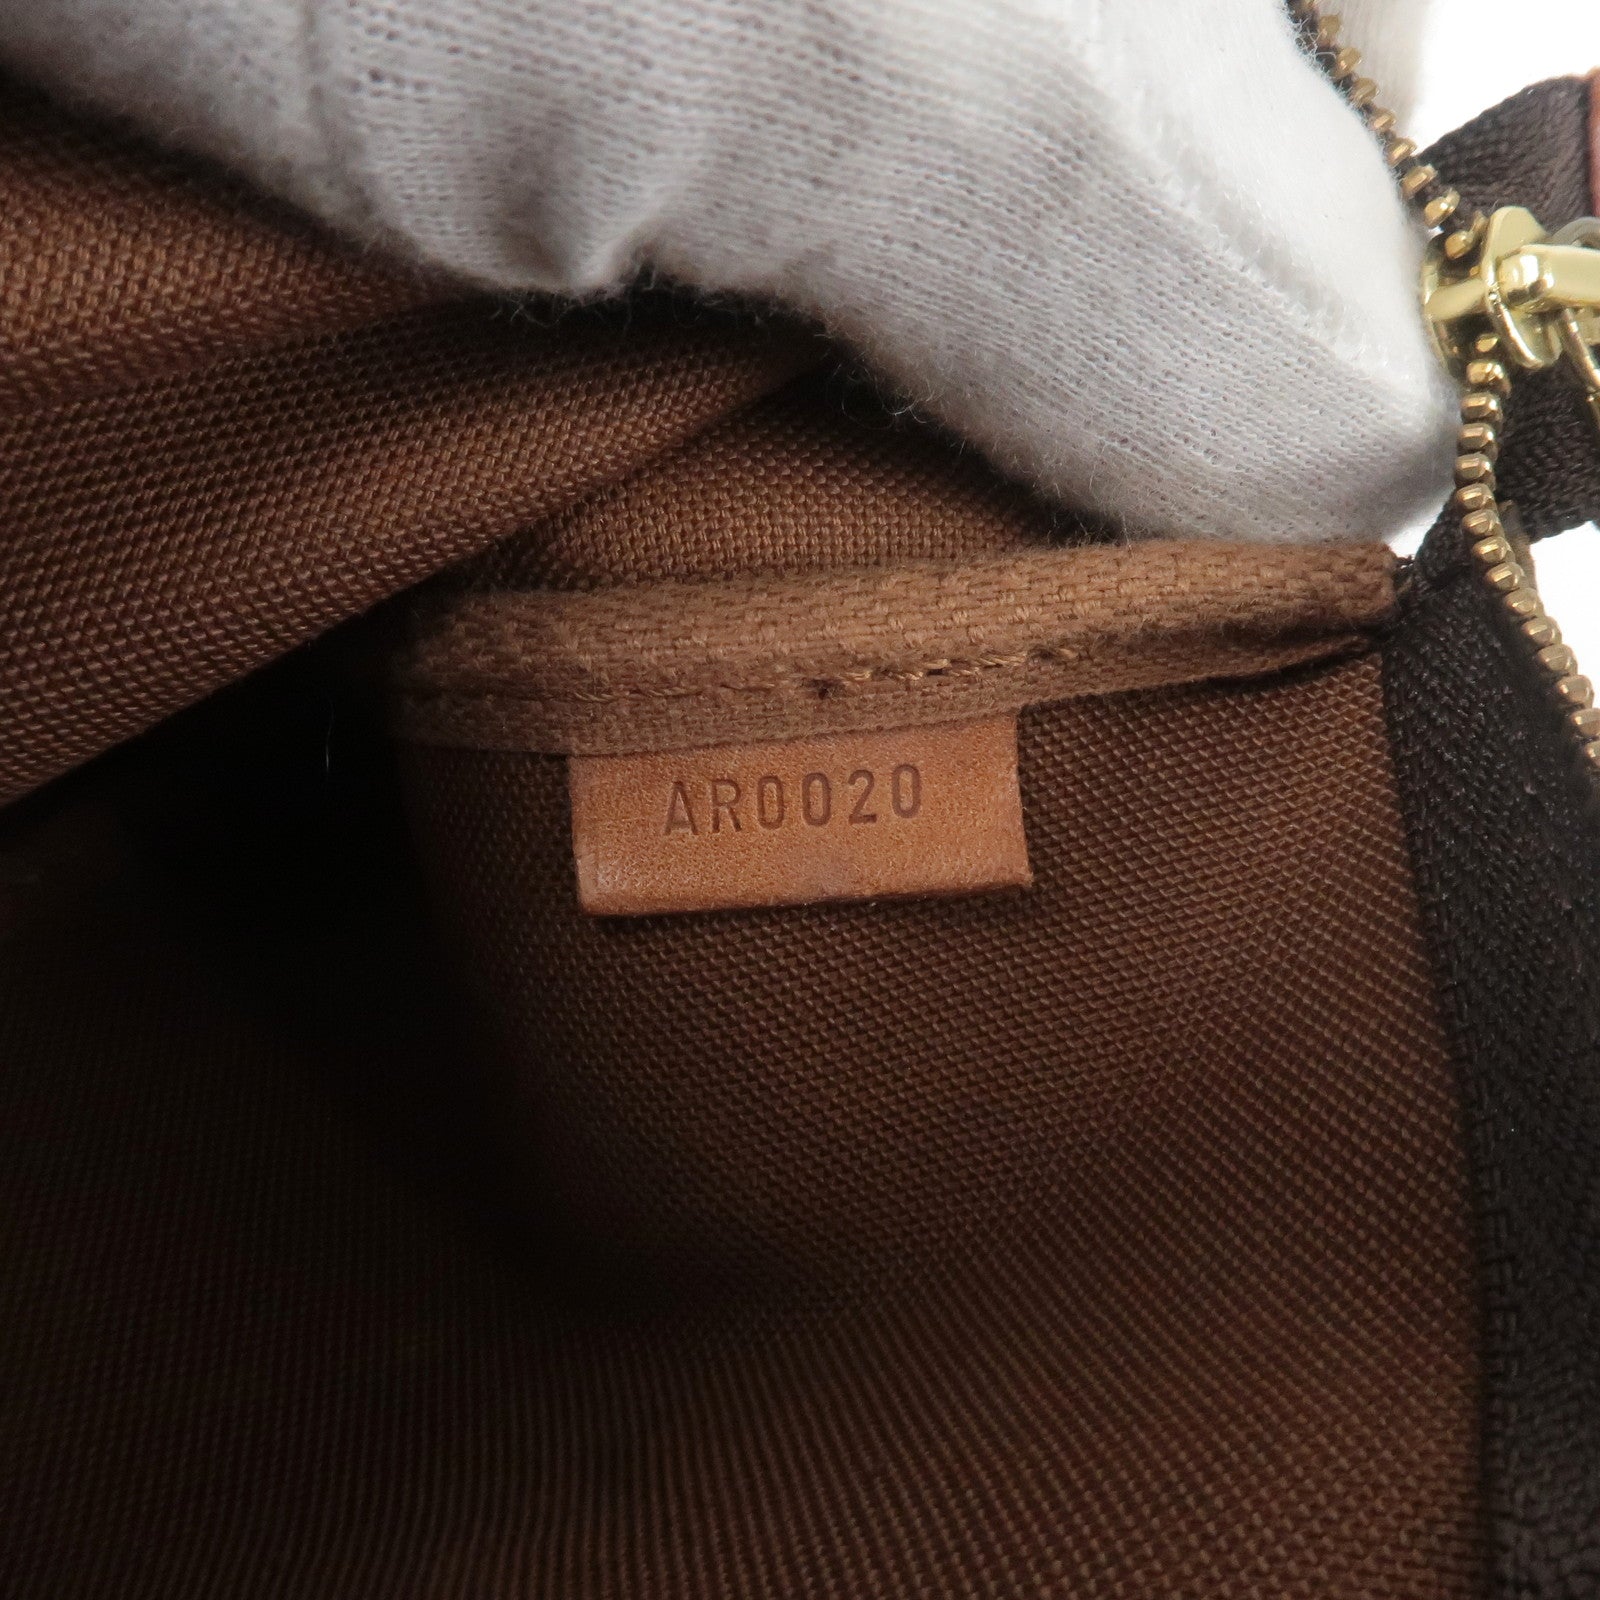 Vuitton - Accessoires - Louis Vuitton Naviglio shoulder bag in